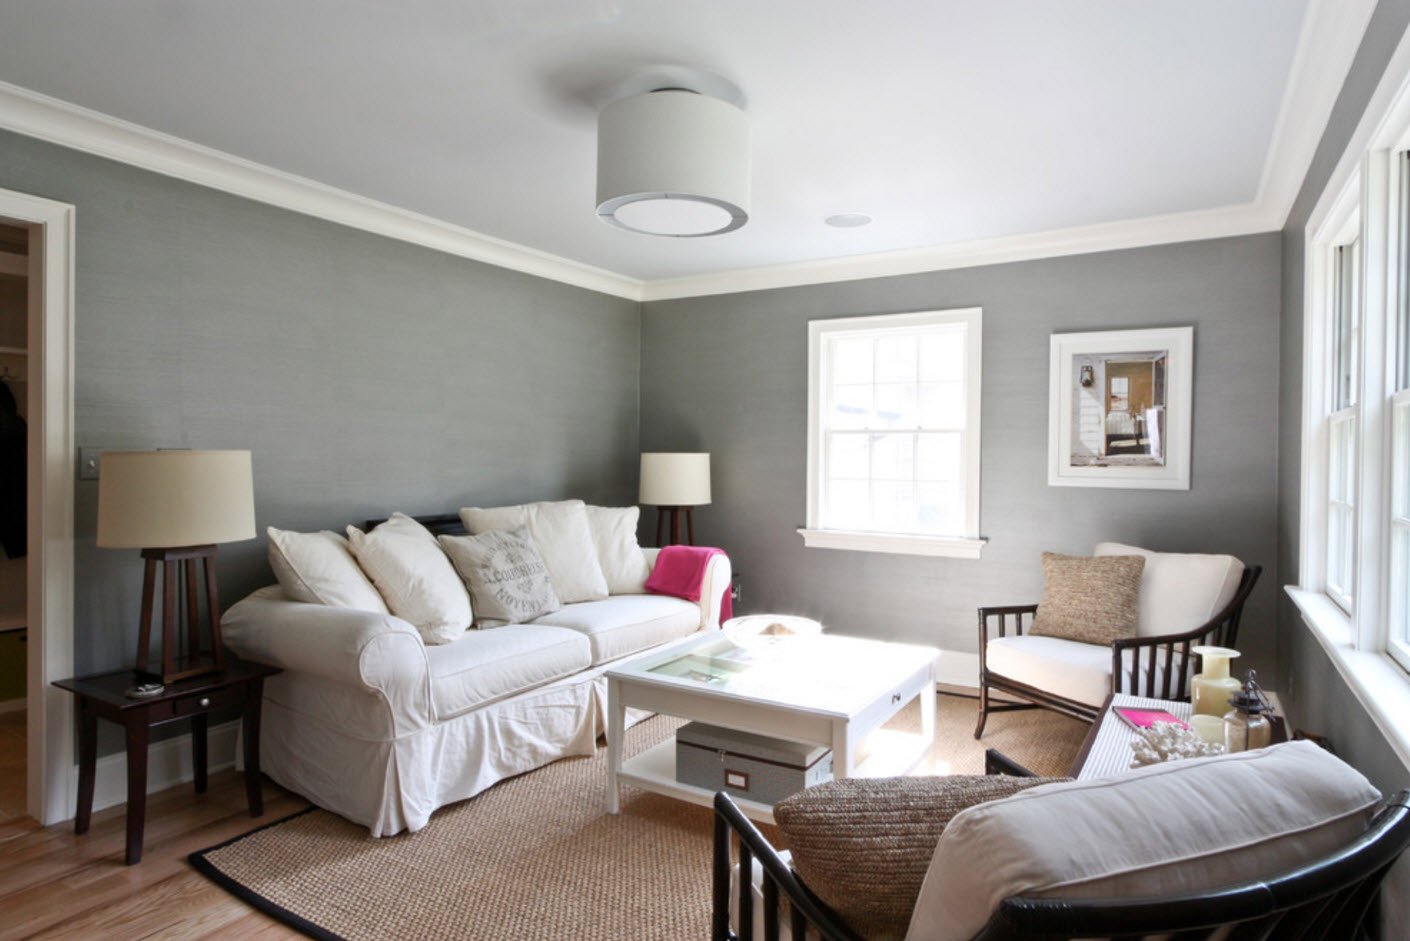 Варианты покраски стен в интерьере квартиры в два цвета и другие способы: дизайн, фото примеров